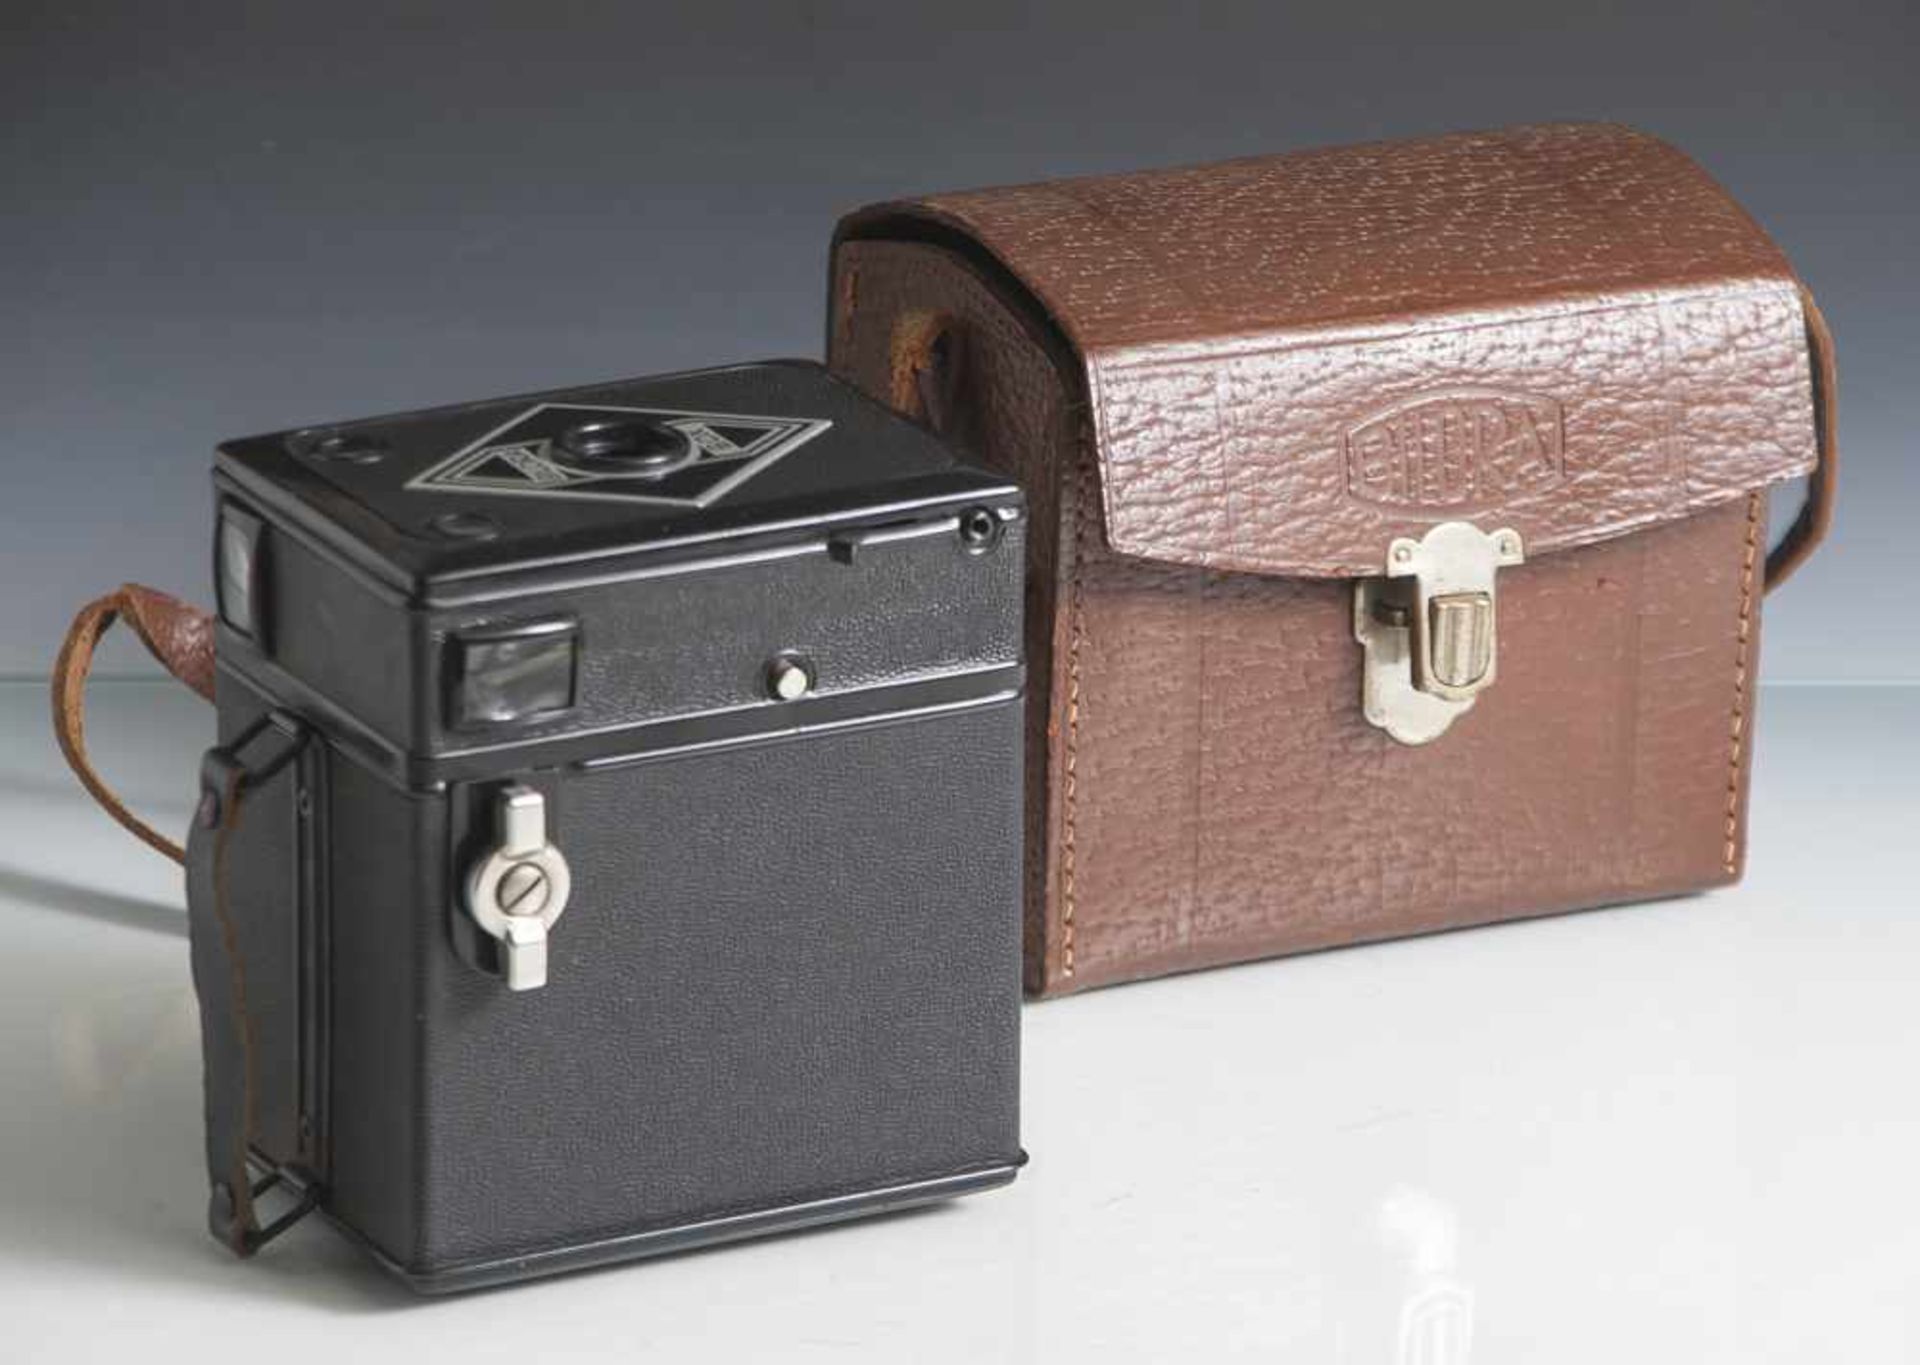 Kamera "Bilora Box", 1930er Jahre, mit Gebrauchsanweisung, in org. Tasche mit Trageriemen. Ca. 10,